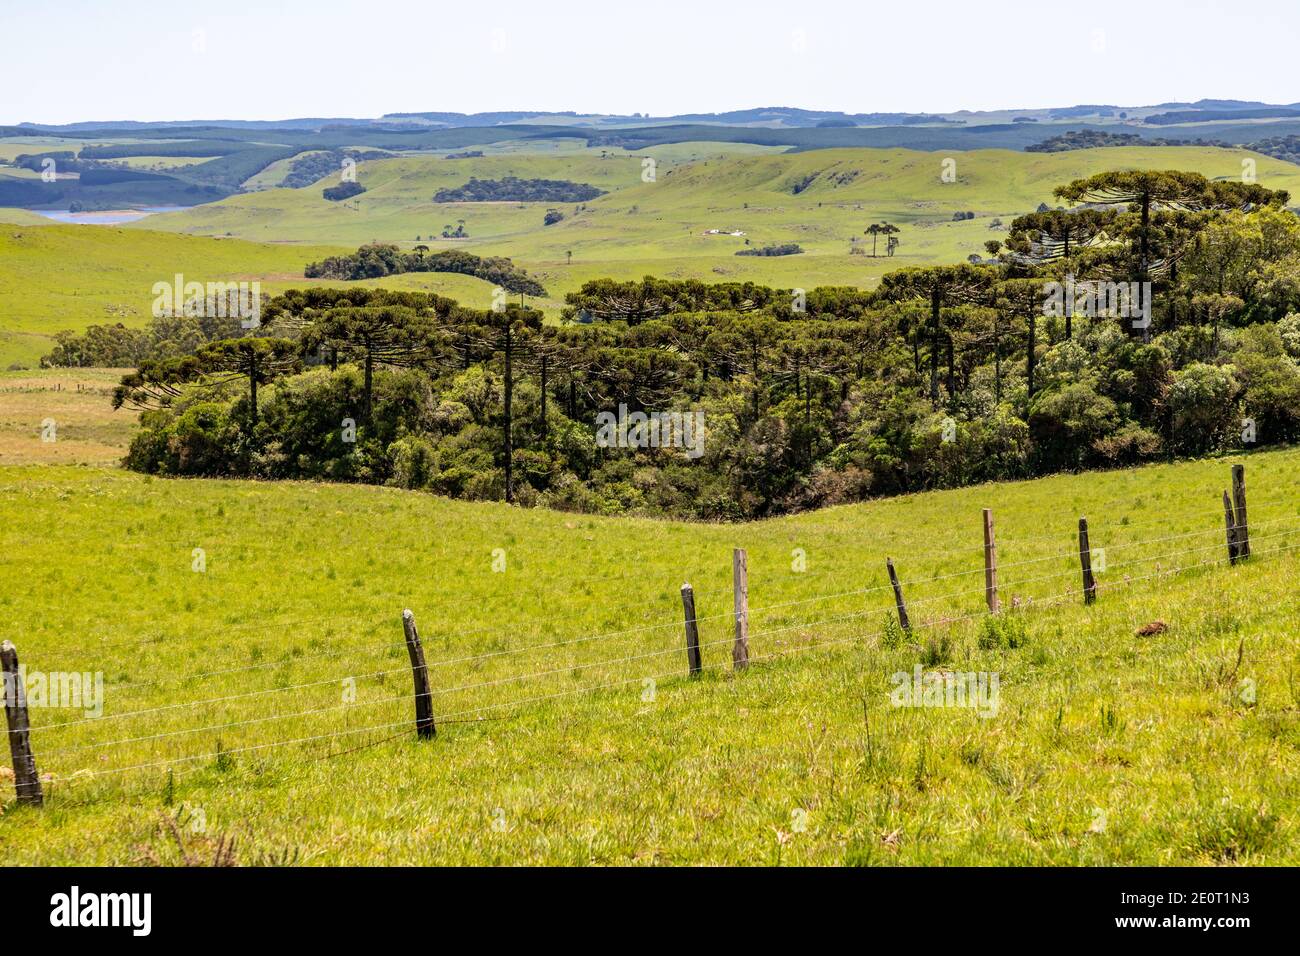 Farm field with Araucaria forest in Sao Francisco de Paula, Rio Grande do Sul, Brazil Stock Photo